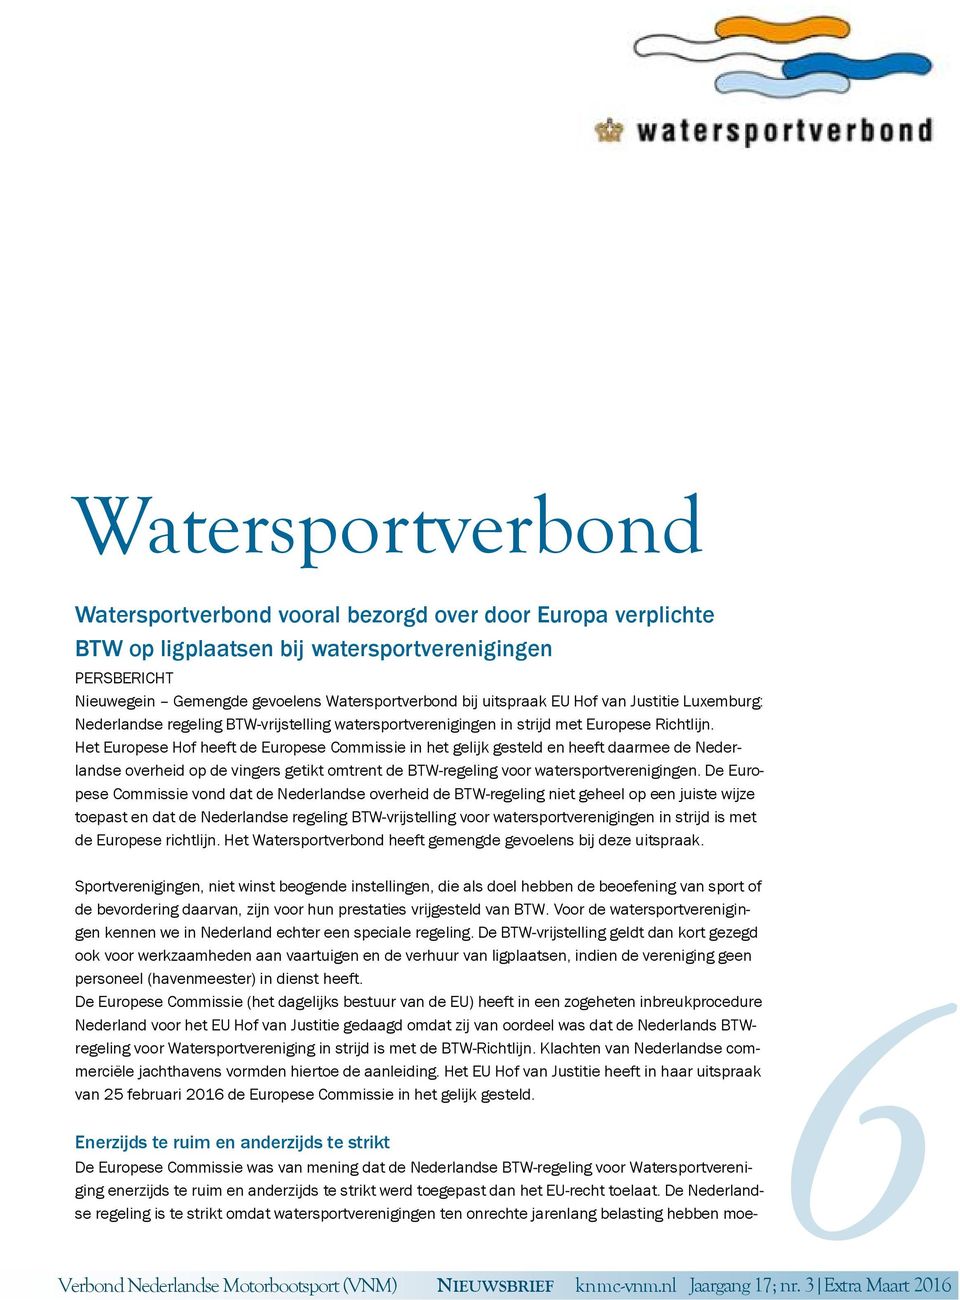 Het Europese Hof heeft de Europese Commissie in het gelijk gesteld en heeft daarmee de Nederlandse overheid op de vingers getikt omtrent de BTW-regeling voor watersportverenigingen.